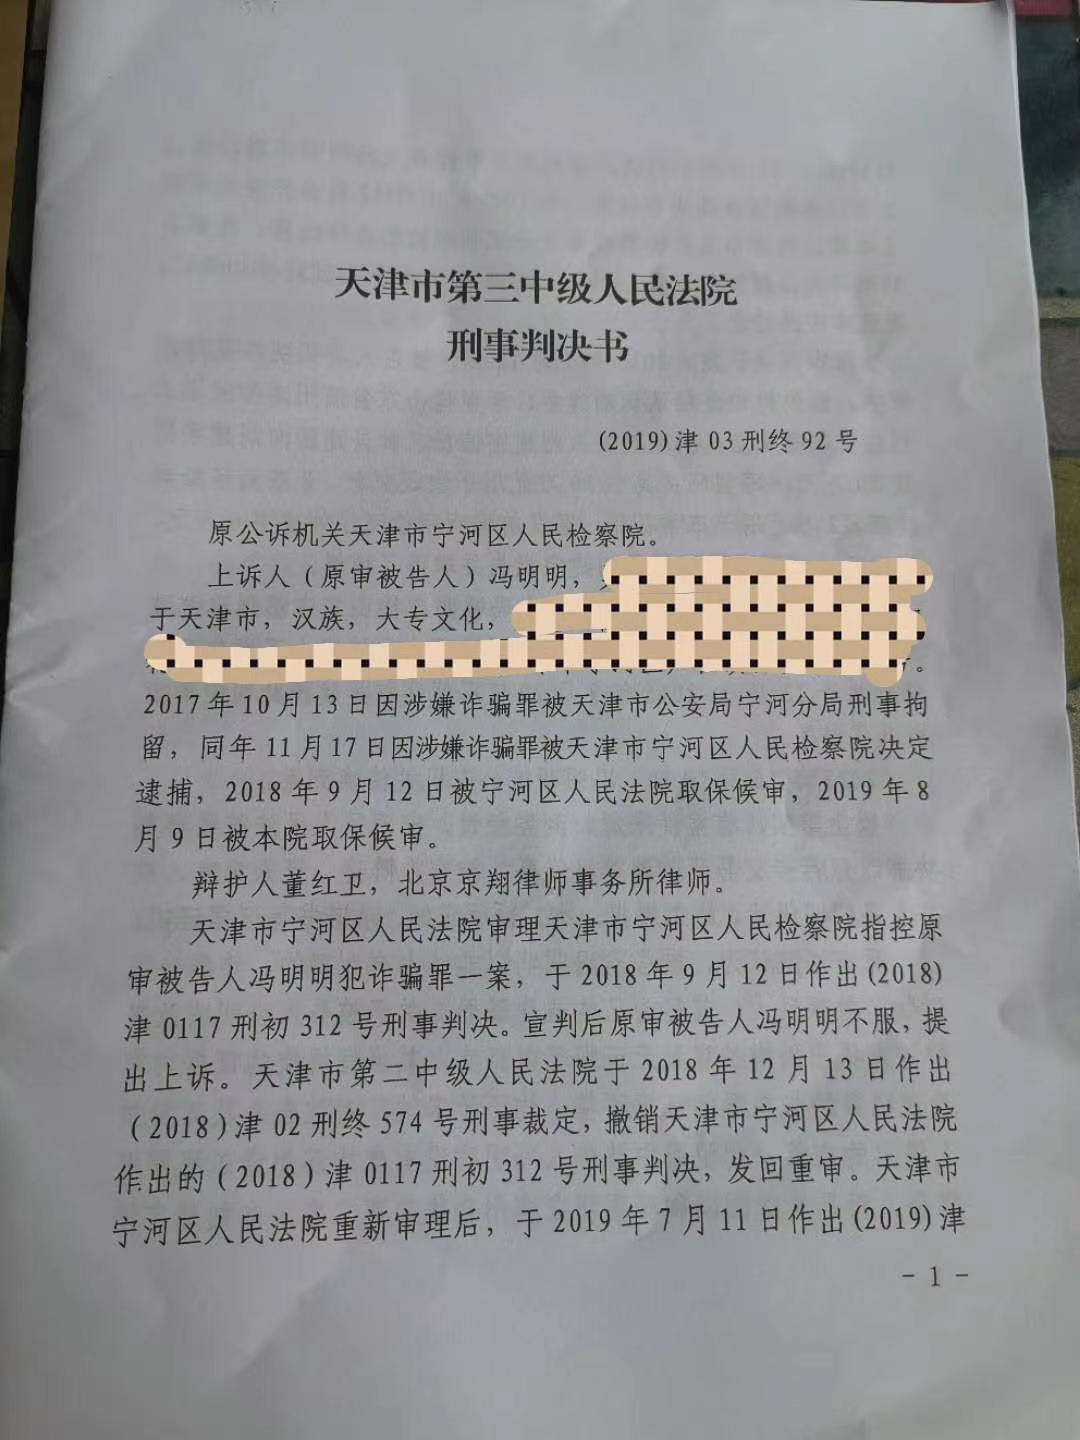 无罪判决：天津三中院冯明明诈骗案宣告无罪